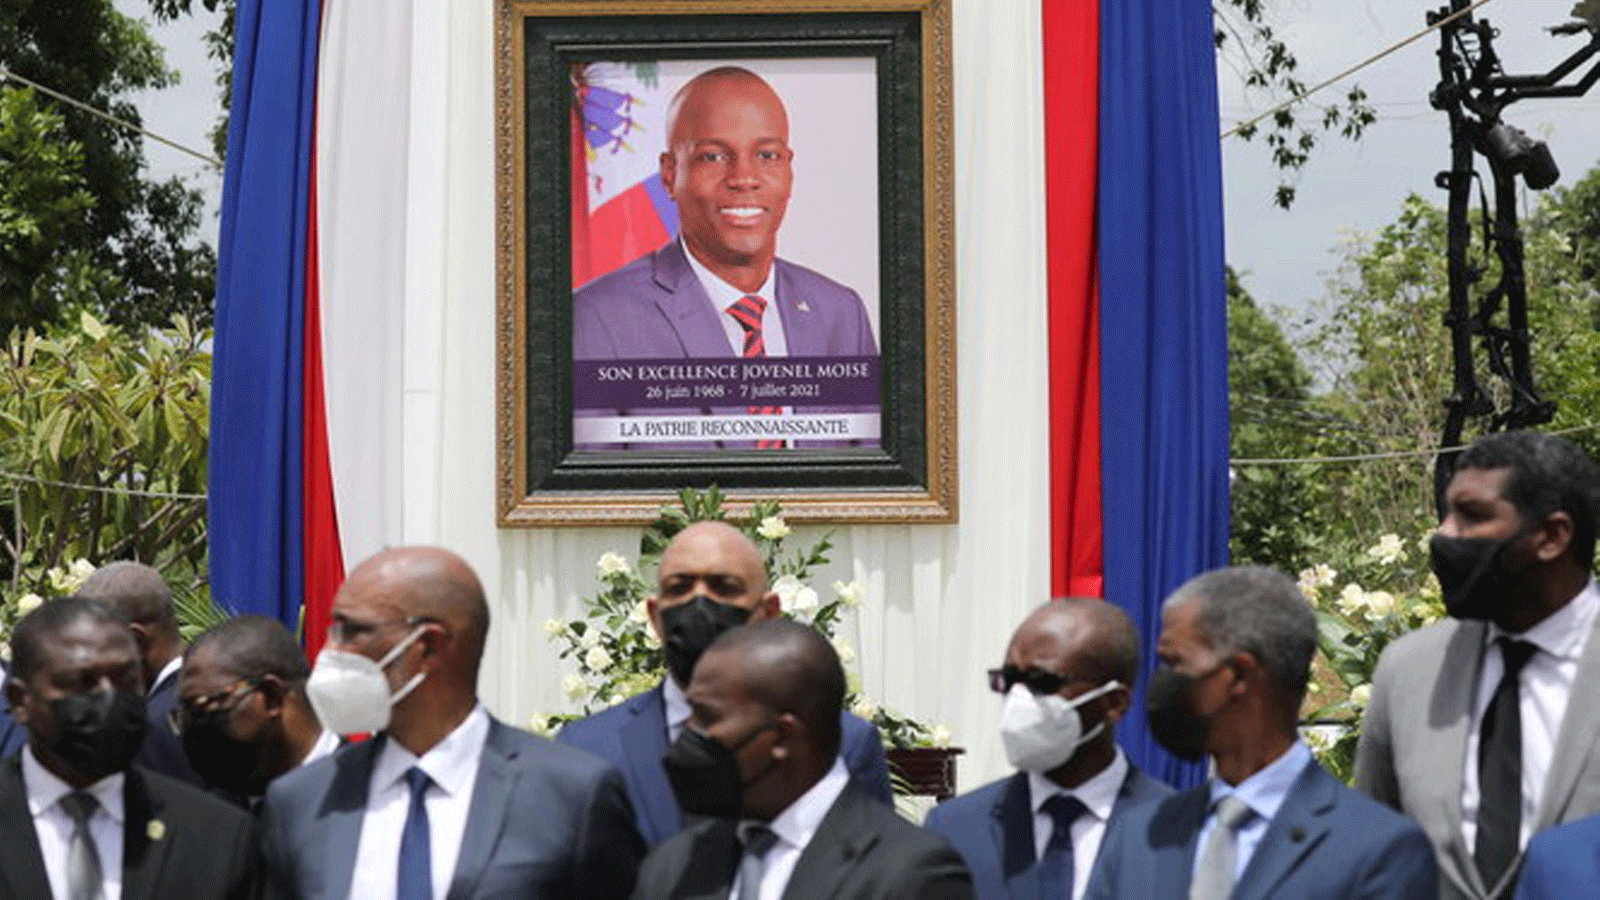 صورة الرئيس الهايتي جوفينيل مويز الذي اغتيل بالرصاص في منزله وسط حفل تأبيني بعيد رحيله